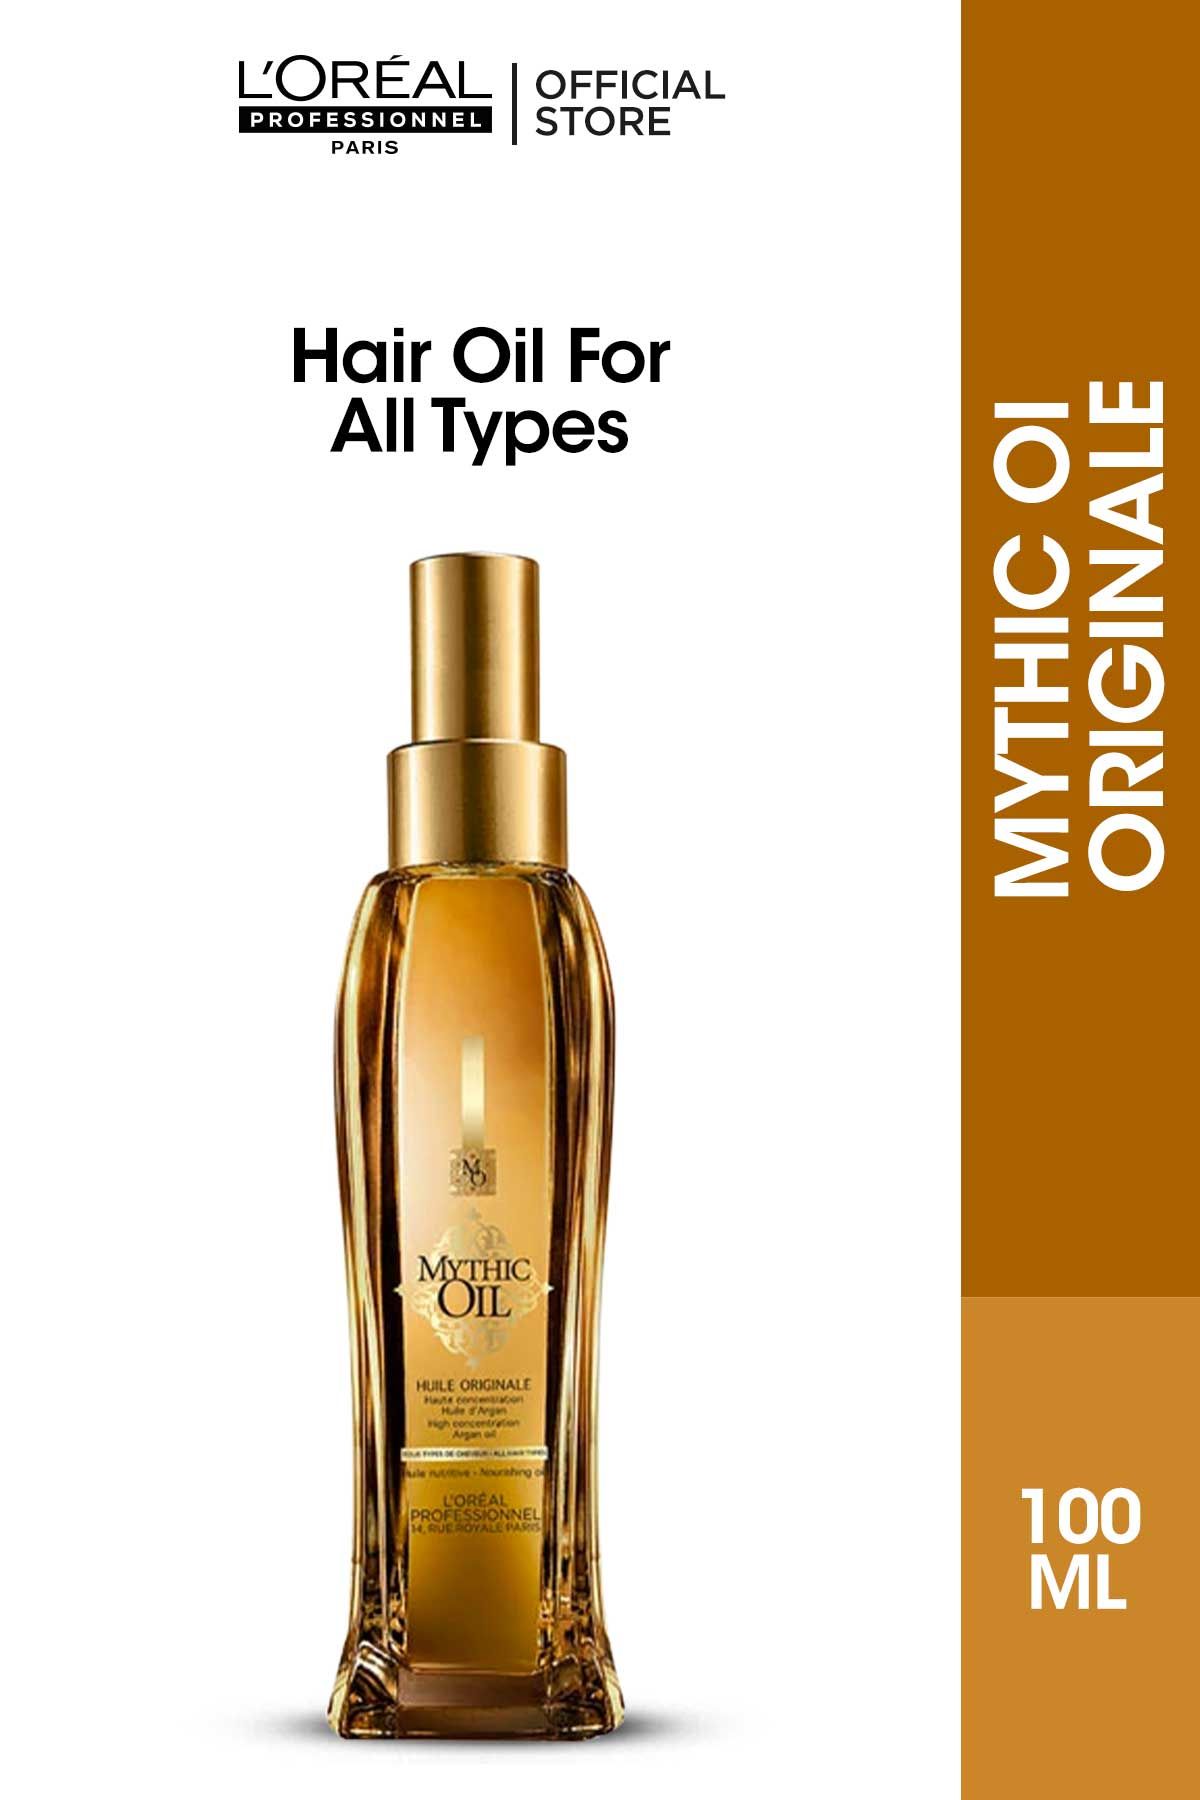 L'Oreal Professionnel L'OrealÂ ProfessionnelÂ Mythic Oil Originale 100 ML -  Hair Oil For All Types N/A 100 ML